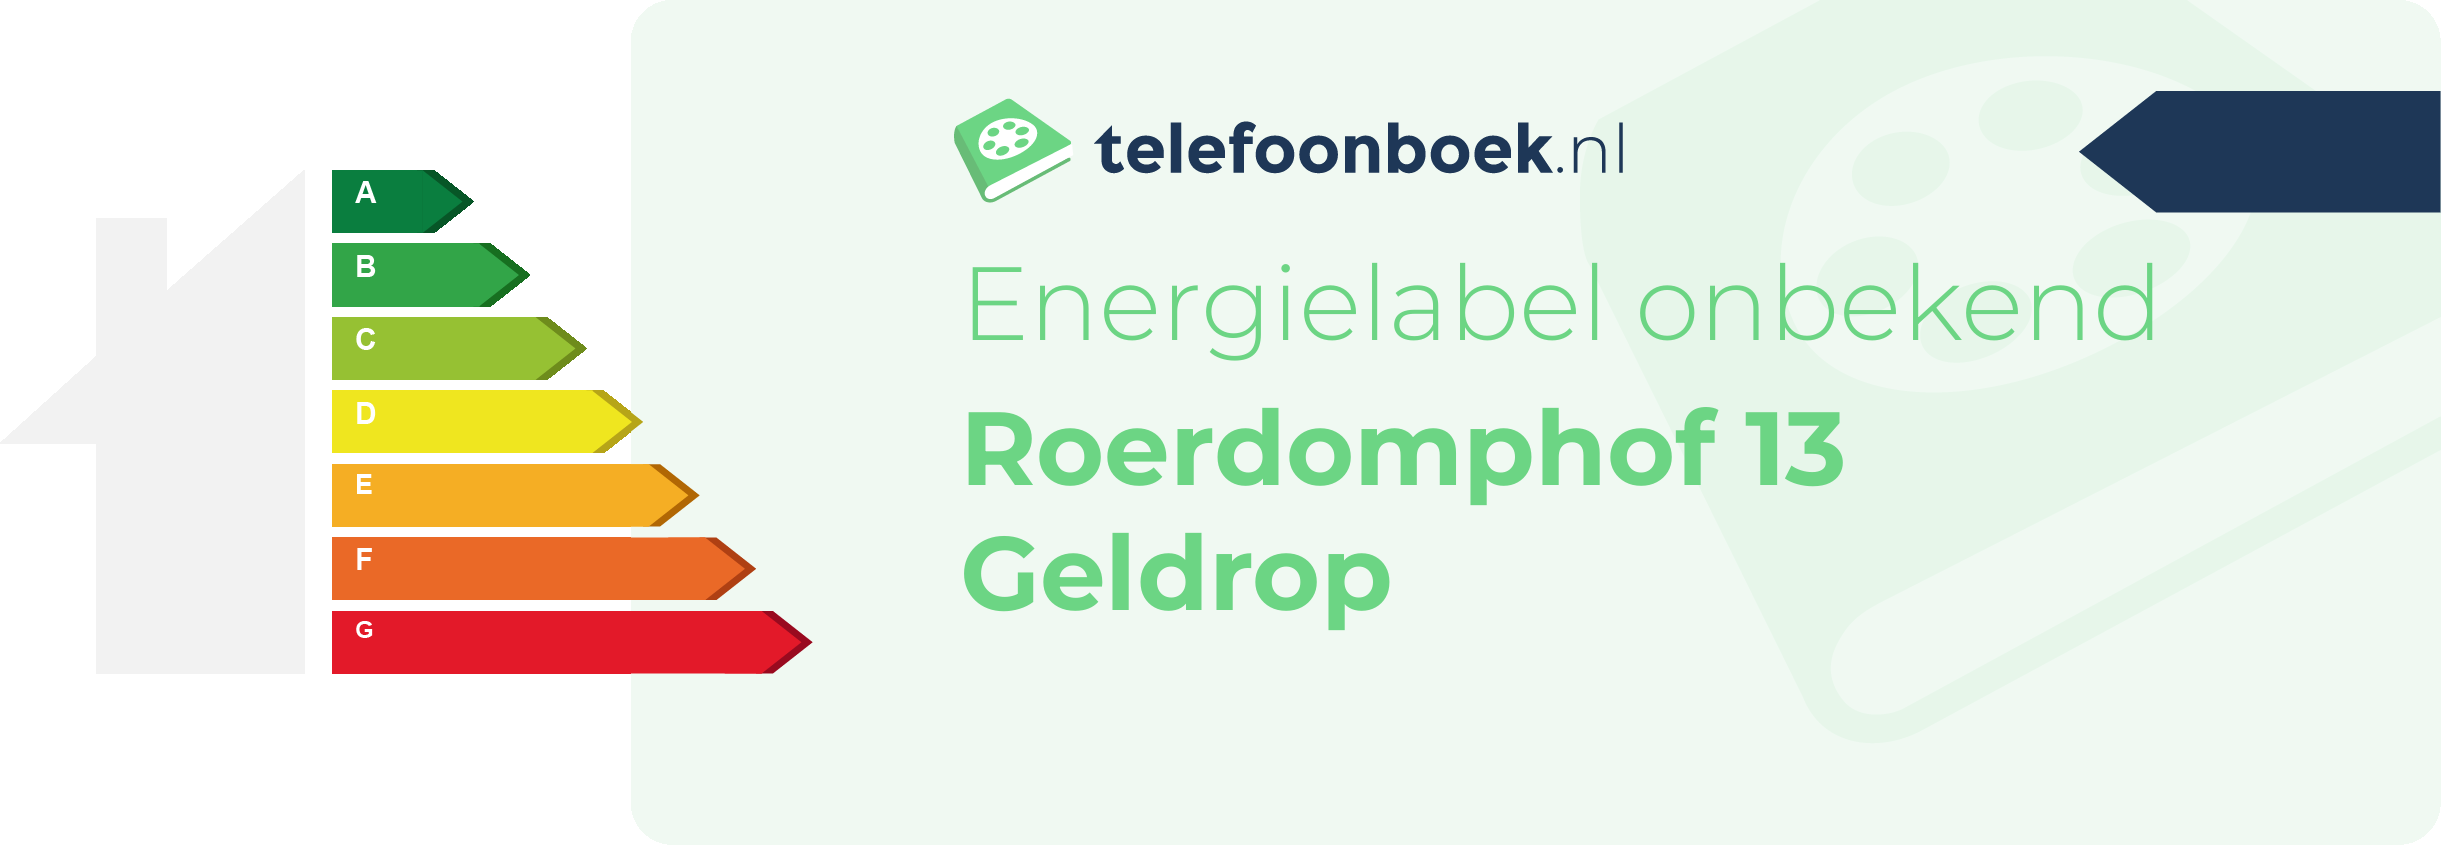 Energielabel Roerdomphof 13 Geldrop